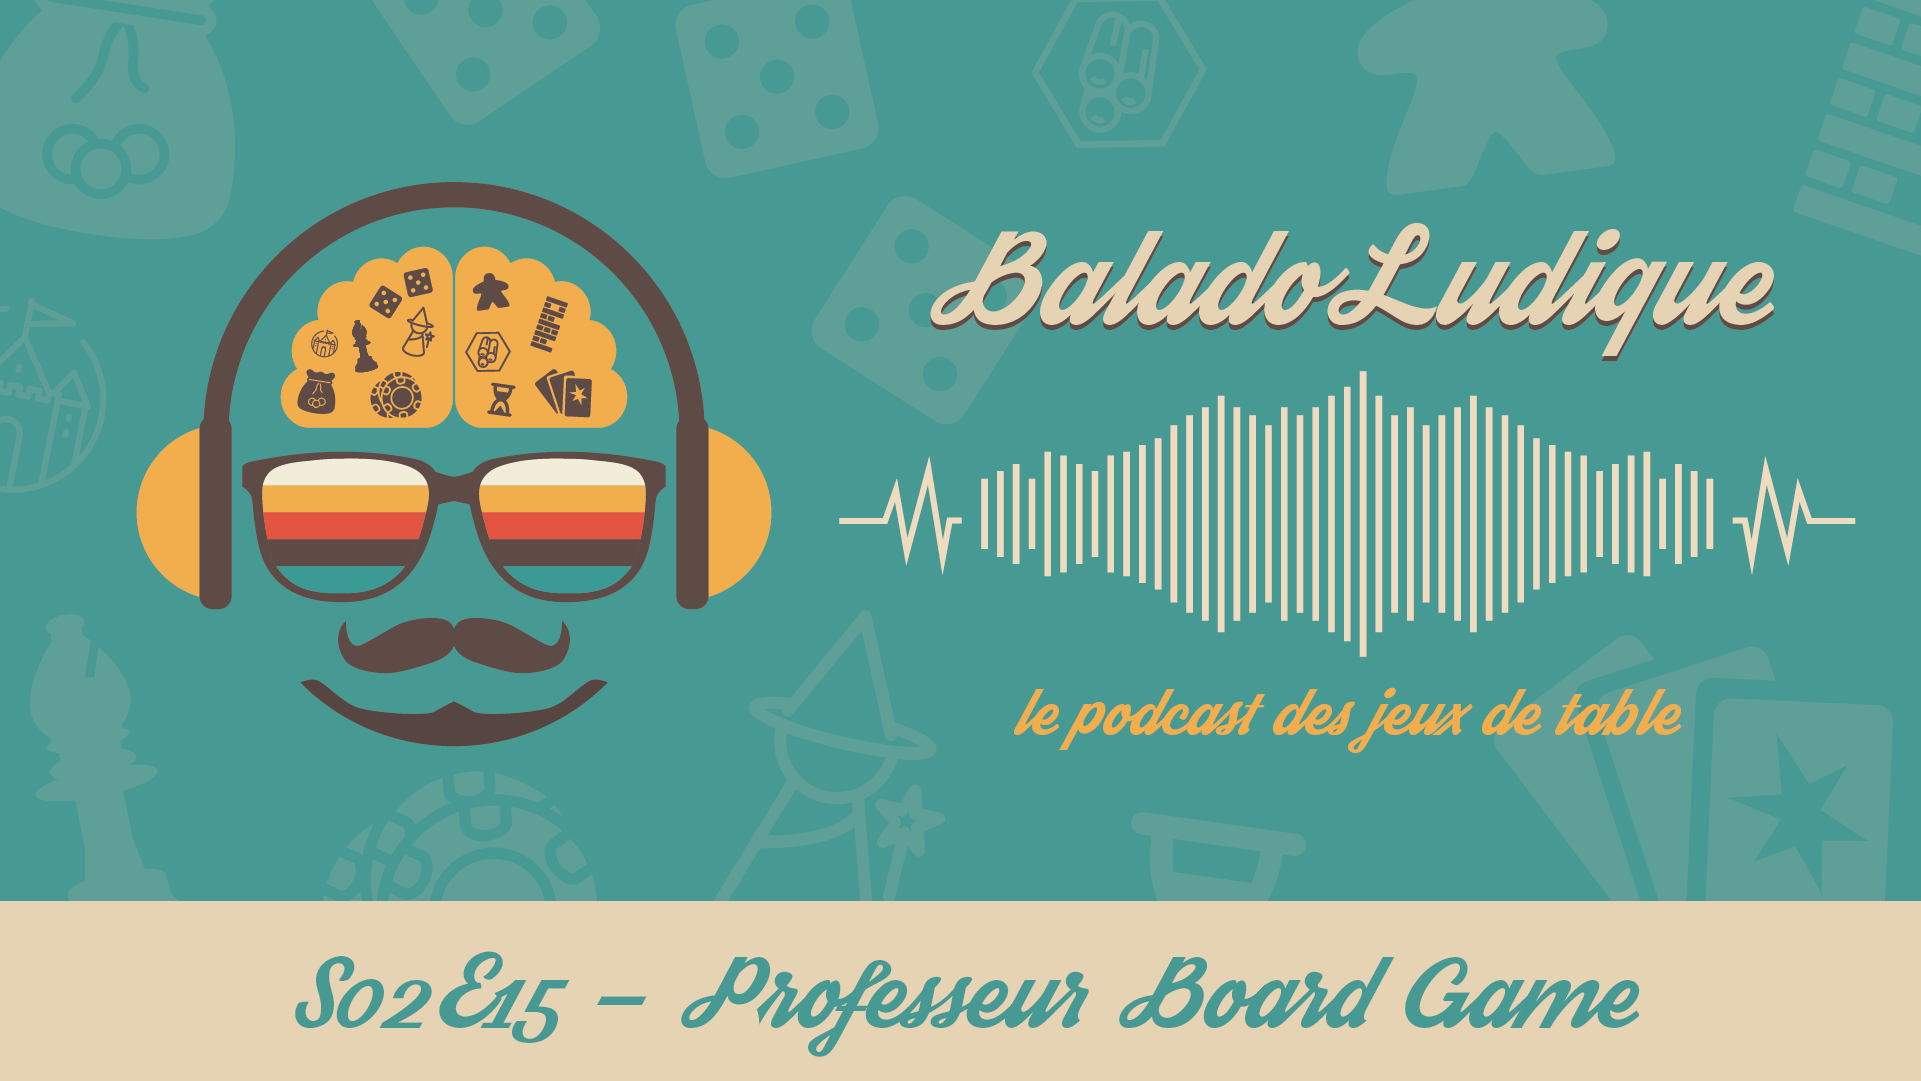 David Couto, Le professeur Board Game - BaladoLudique - s02e15